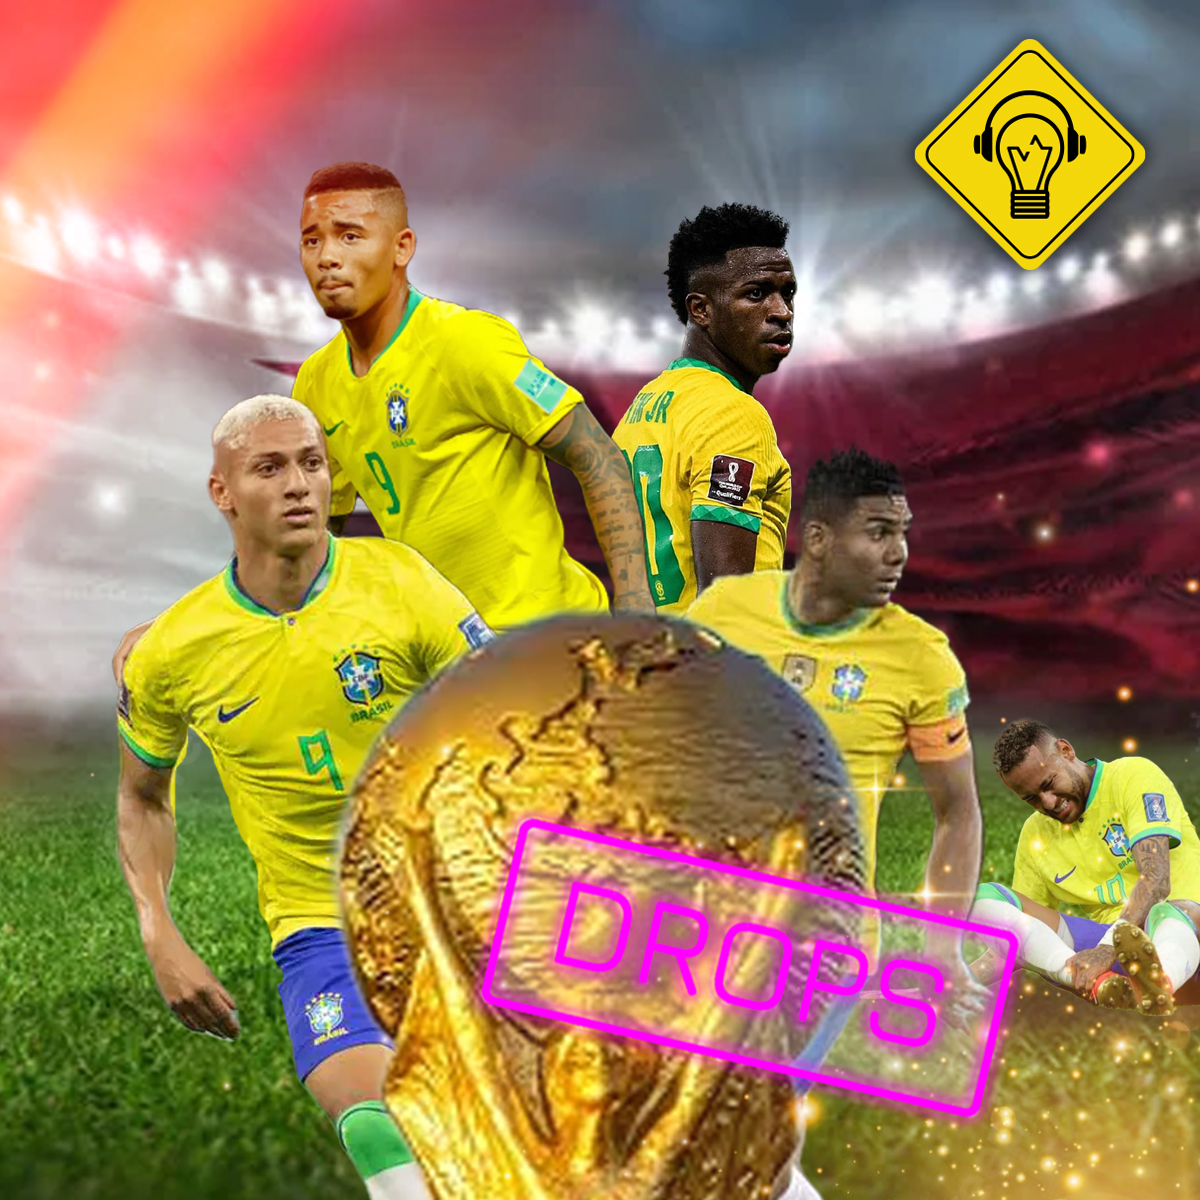 Ideia Errada Drops #Comentando o jogo do Brasil na Copa!